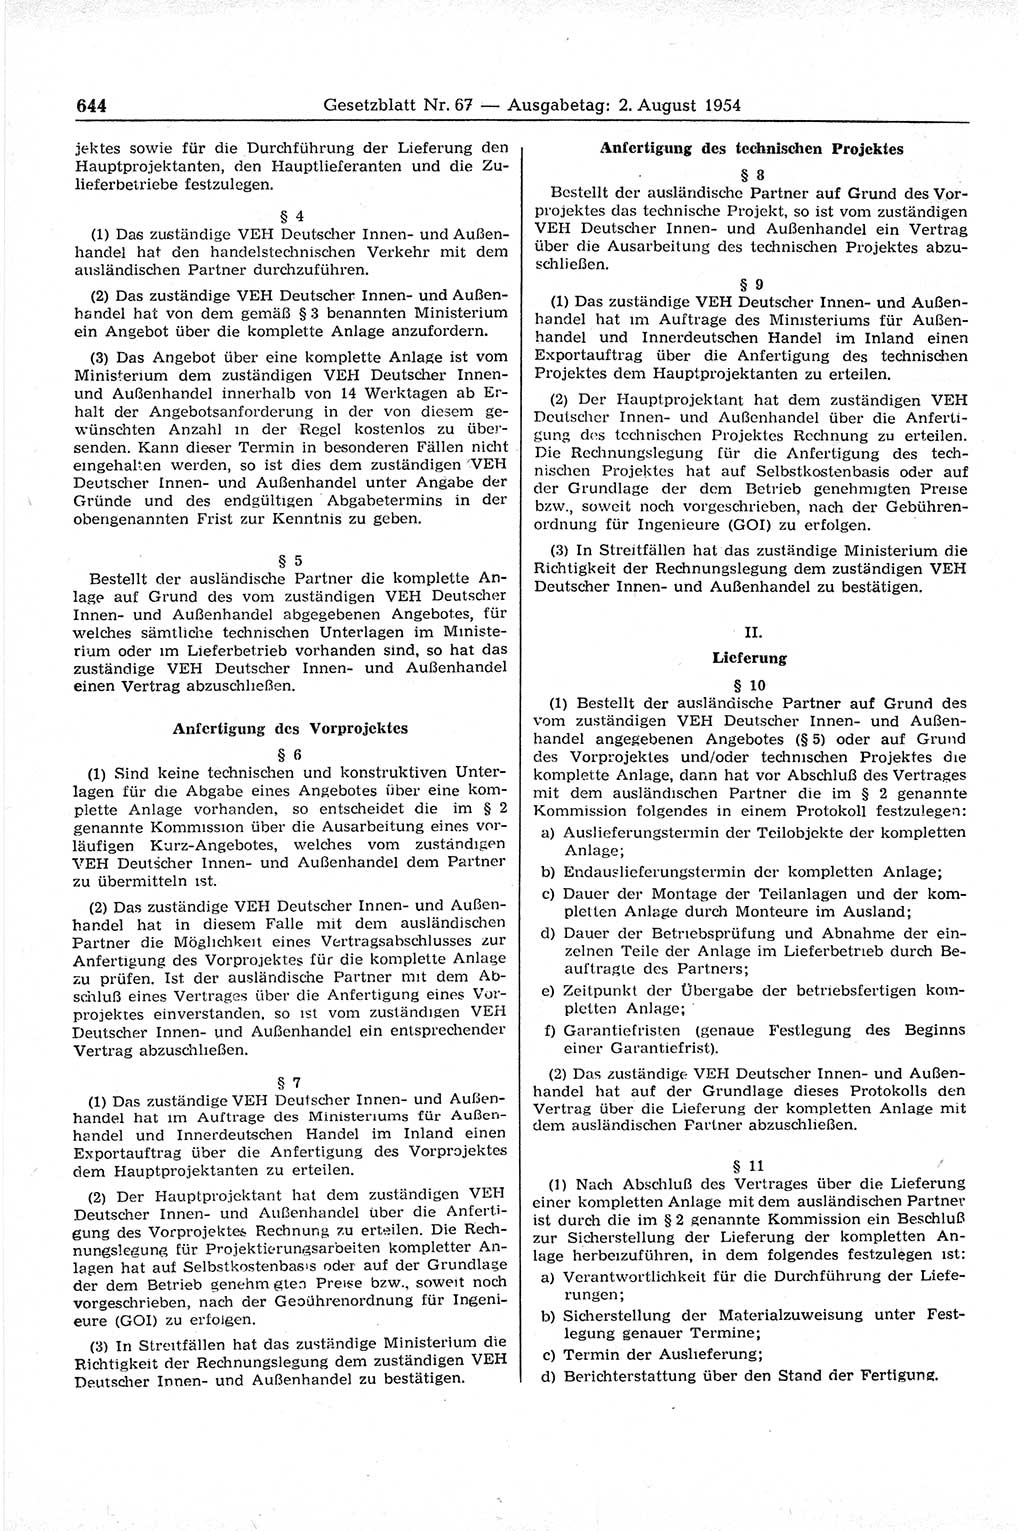 Gesetzblatt (GBl.) der Deutschen Demokratischen Republik (DDR) 1954, Seite 644 (GBl. DDR 1954, S. 644)